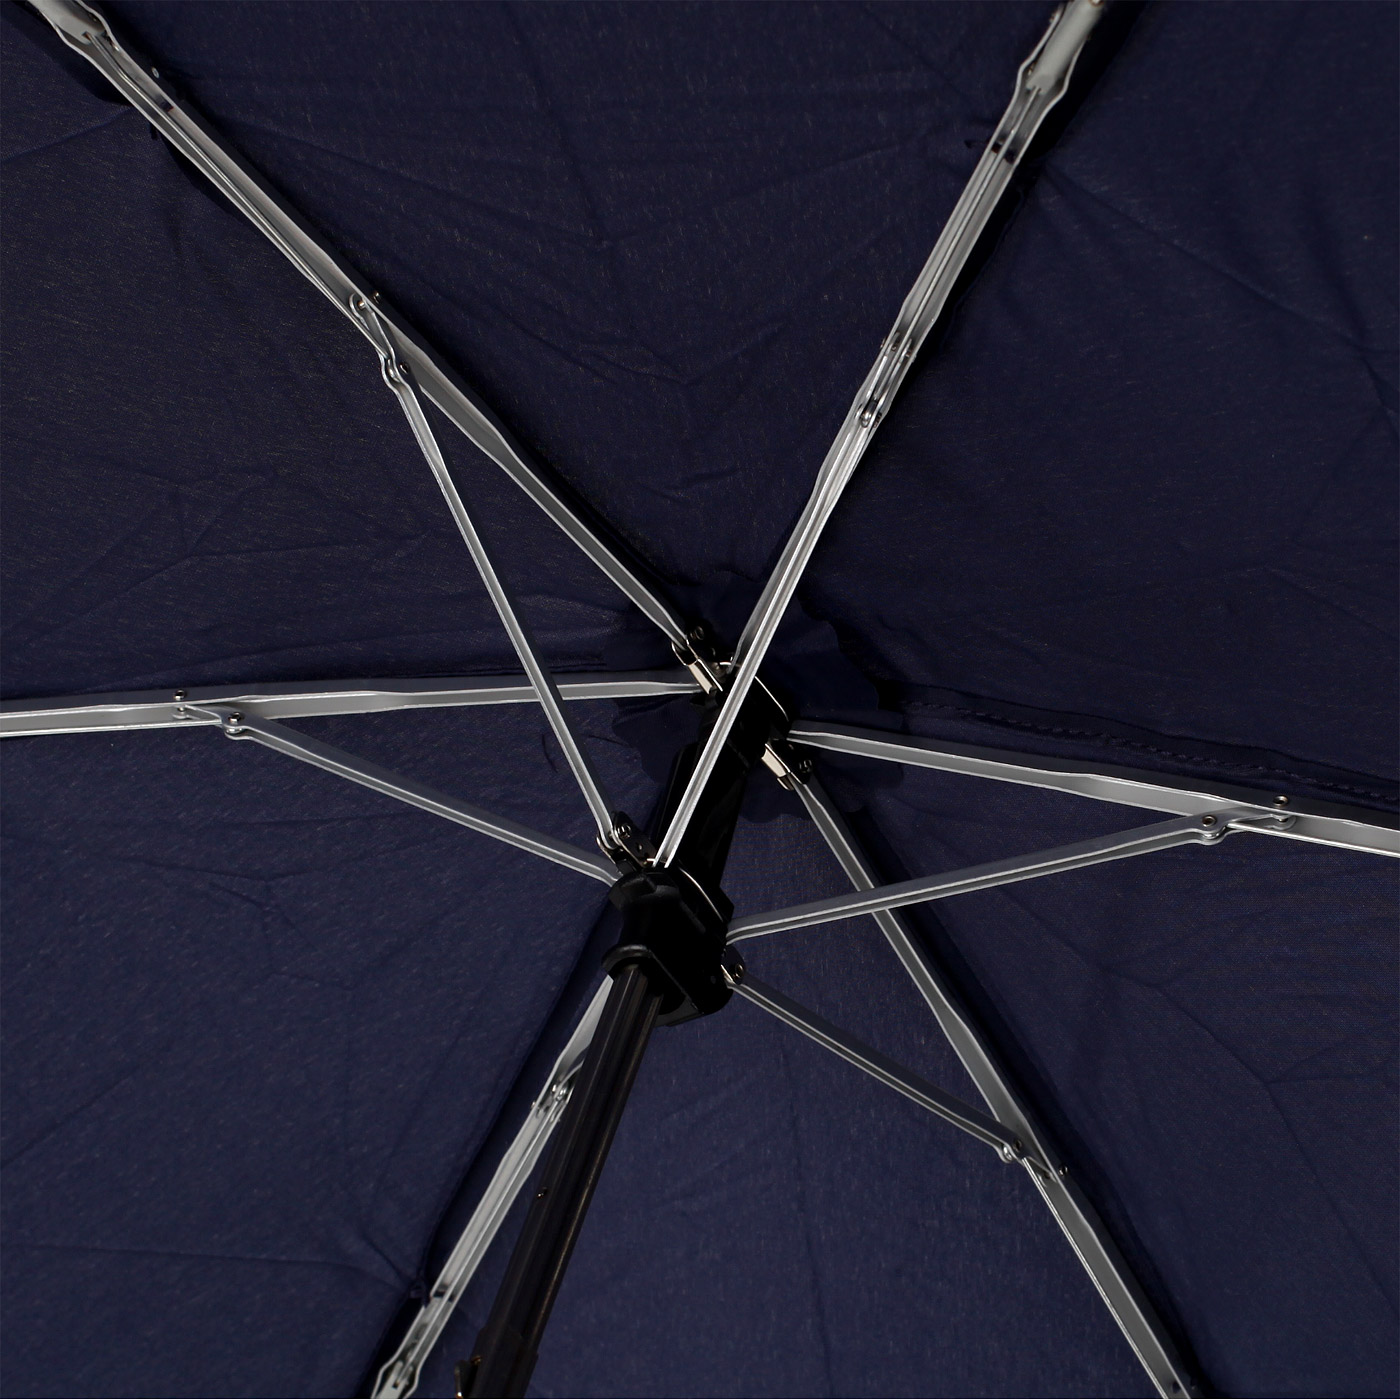 Компактный зонт Doppler Uni